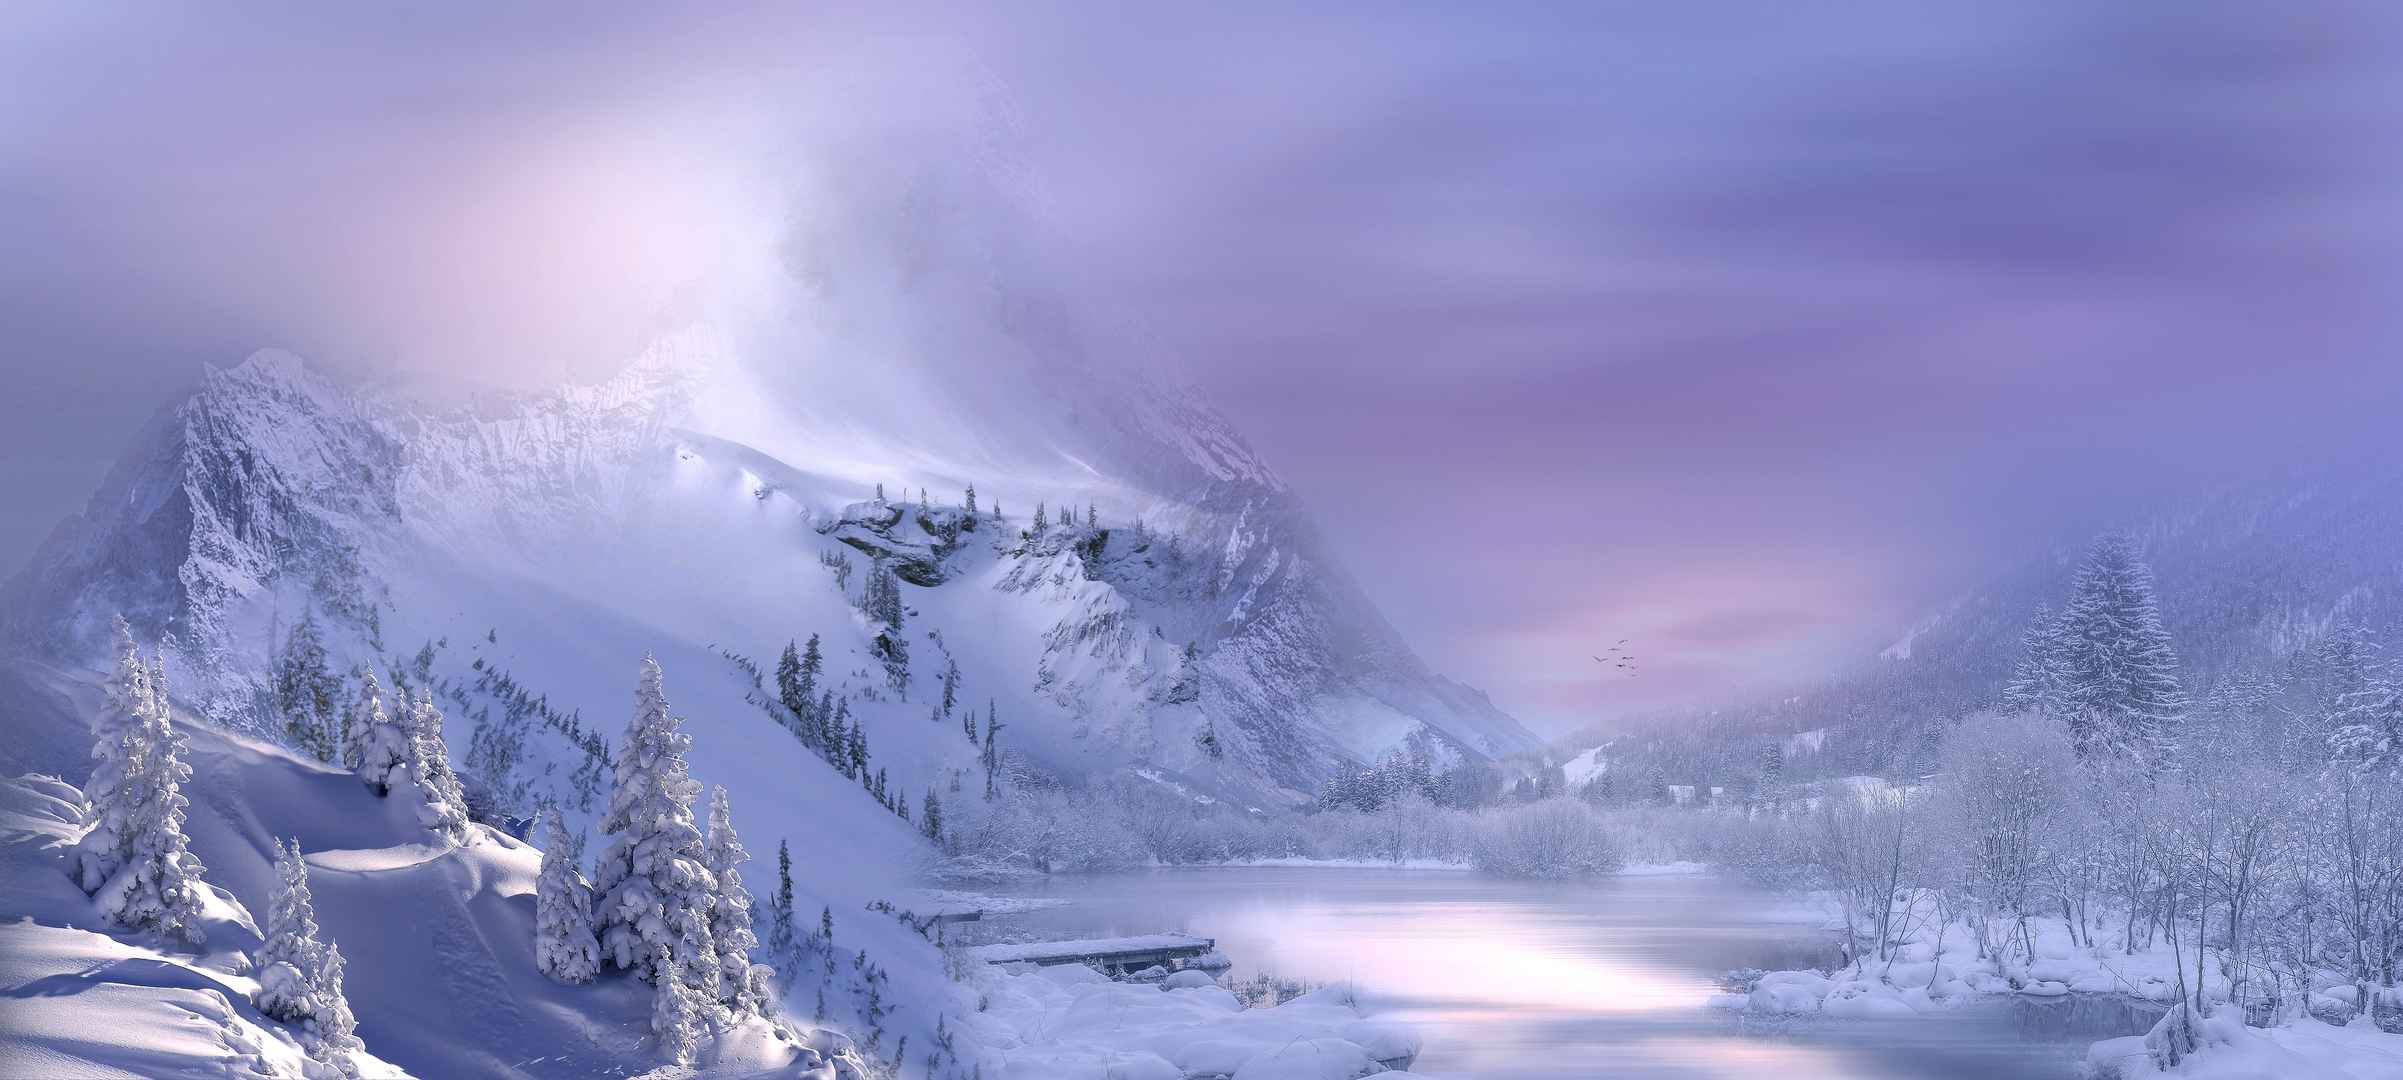 冬季白雪覆盖湖面和山峰图片